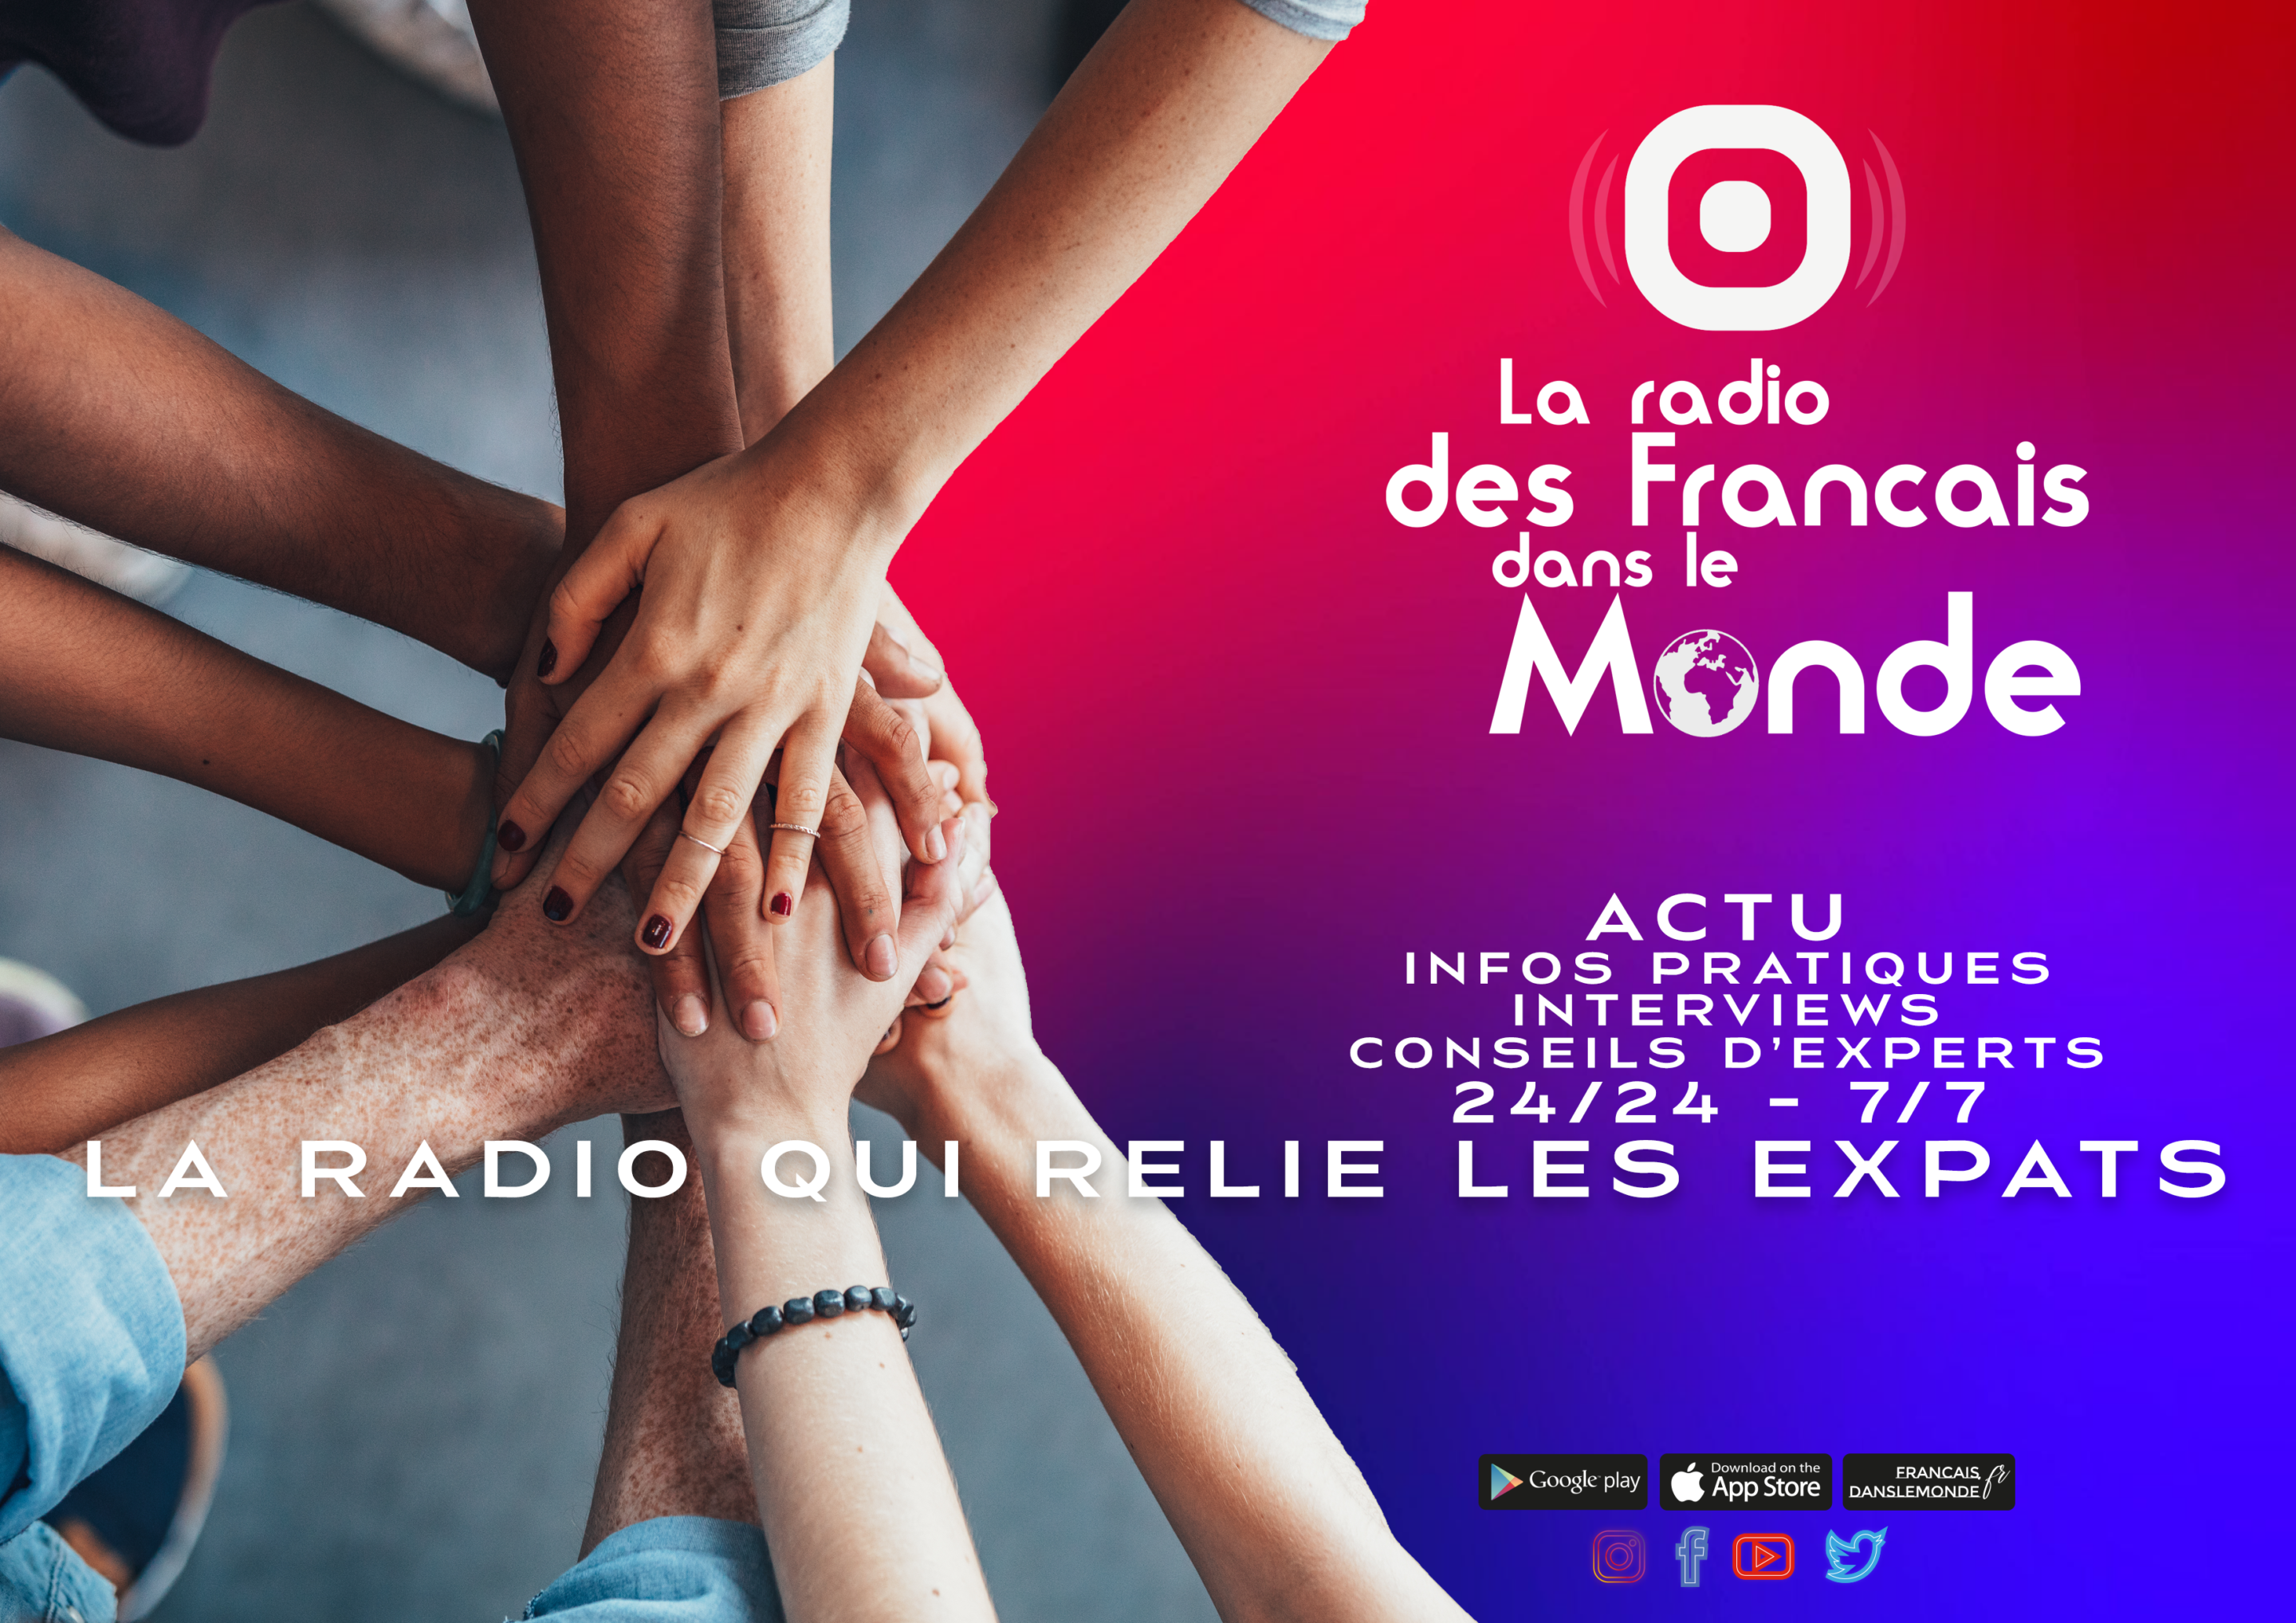 La radio des Français dans le monde : la radio qui relie les expats